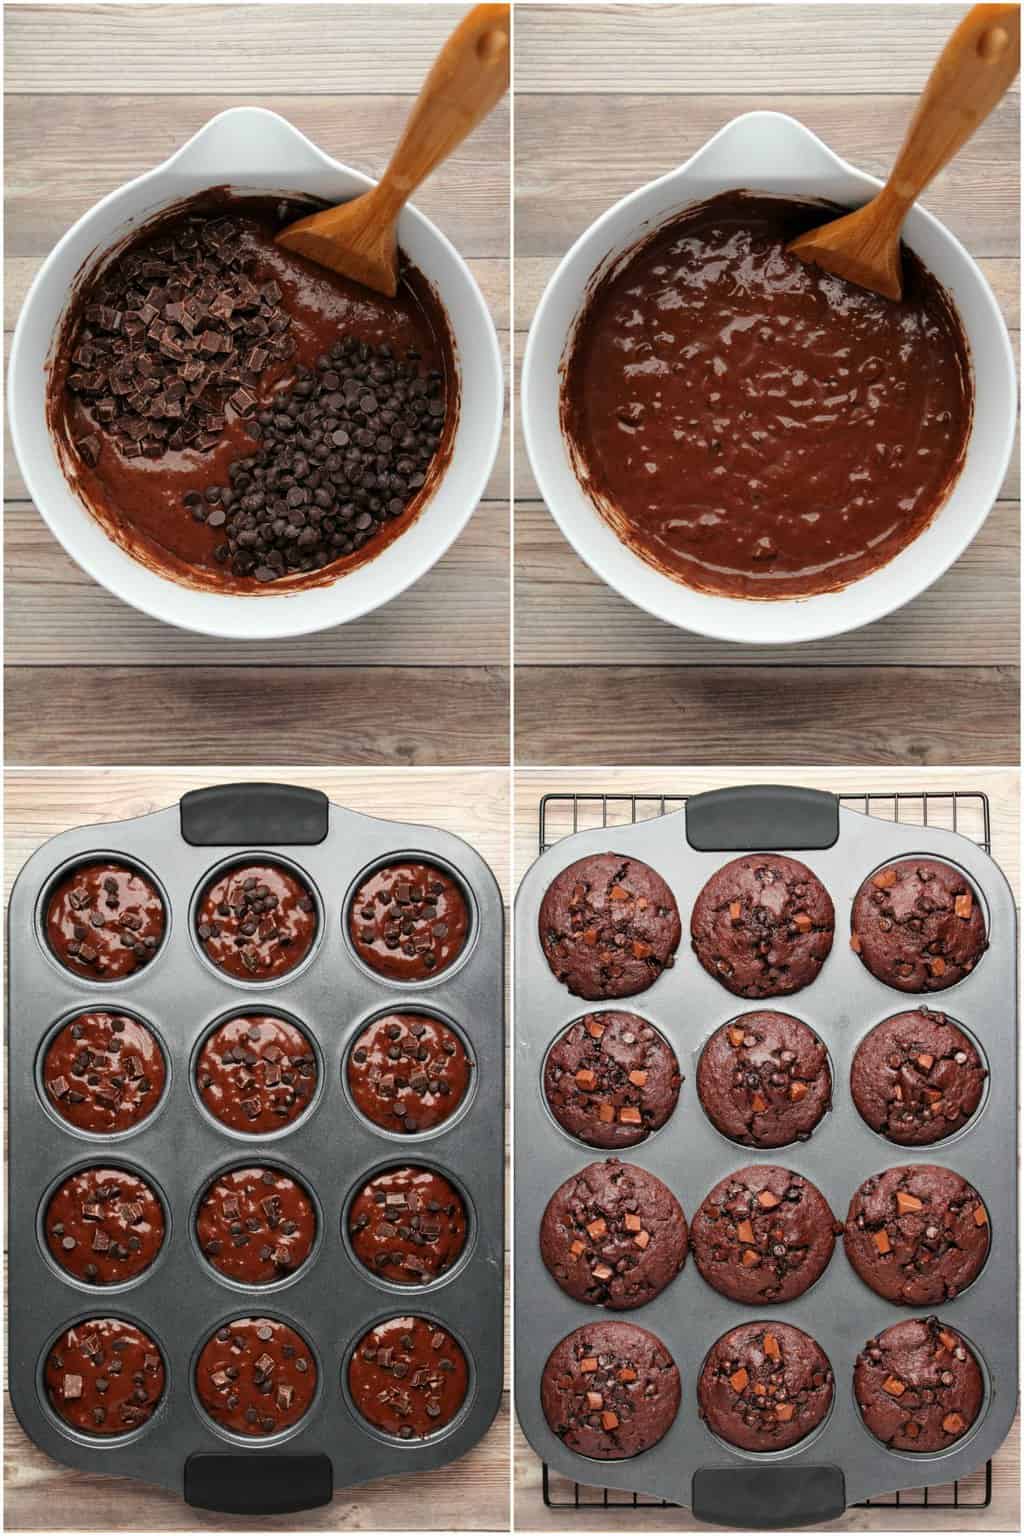 stap voor stap proces fotocollage van het maken van dubbele chocolade vegan chocolade muffins. 